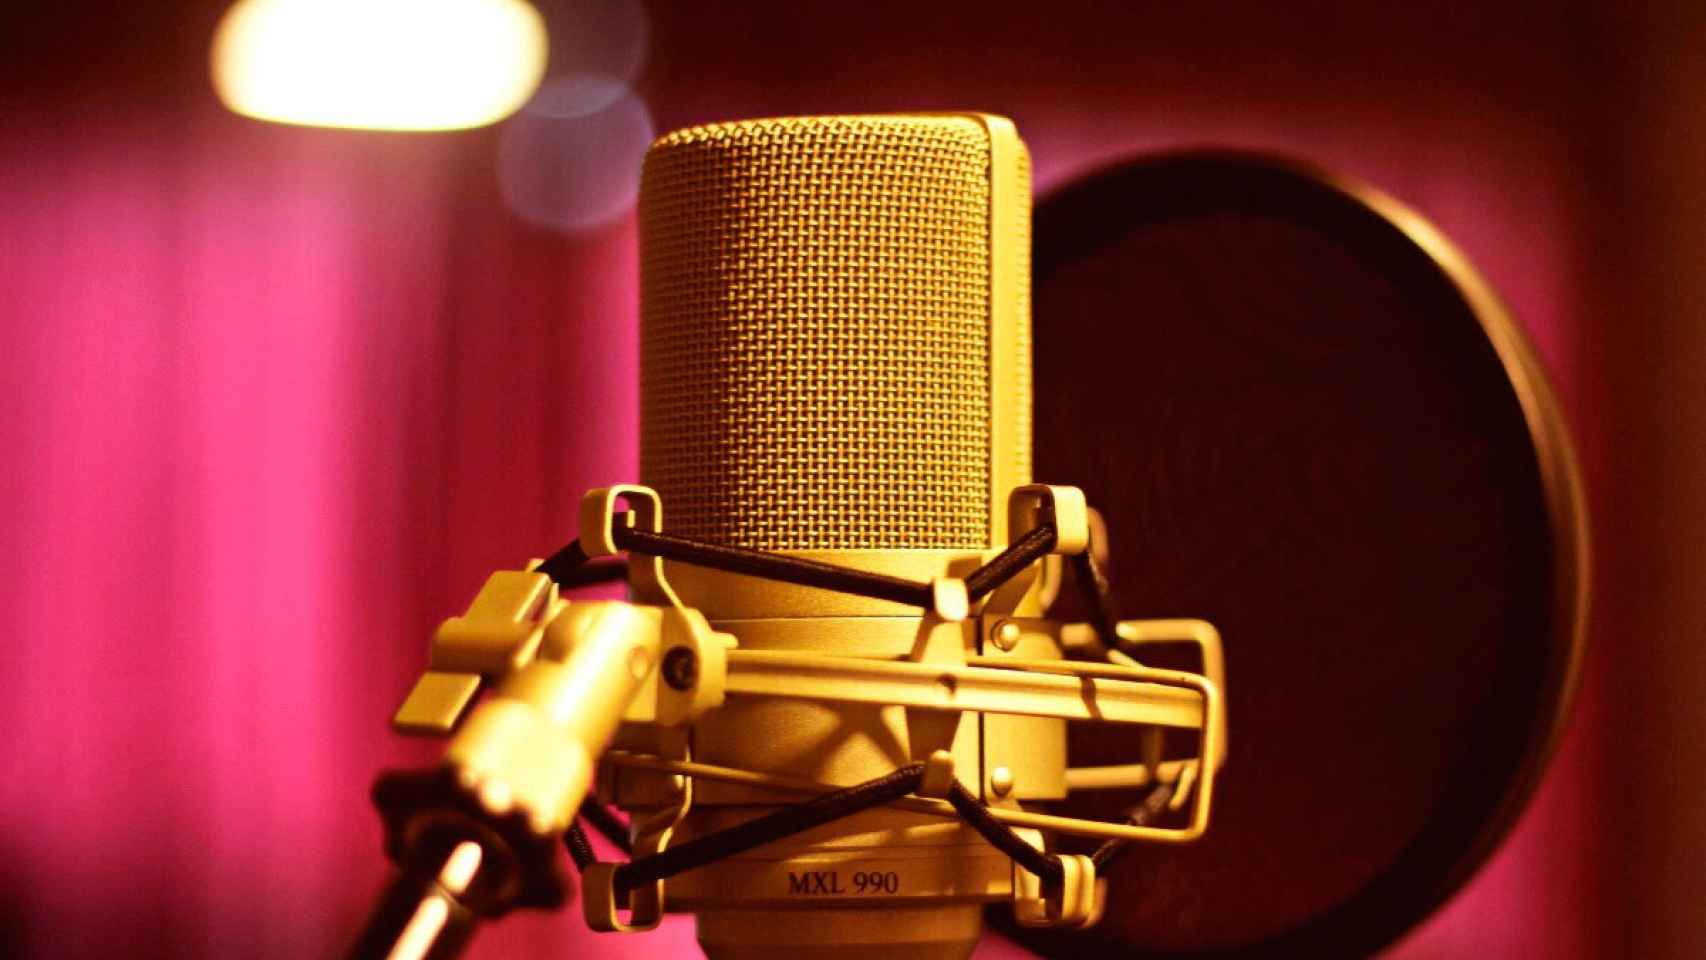 Los podcasts son muy sencillos de producir, y solo es necesario disponer de un dispositivo para grabar, como un móvil o un micrófono.